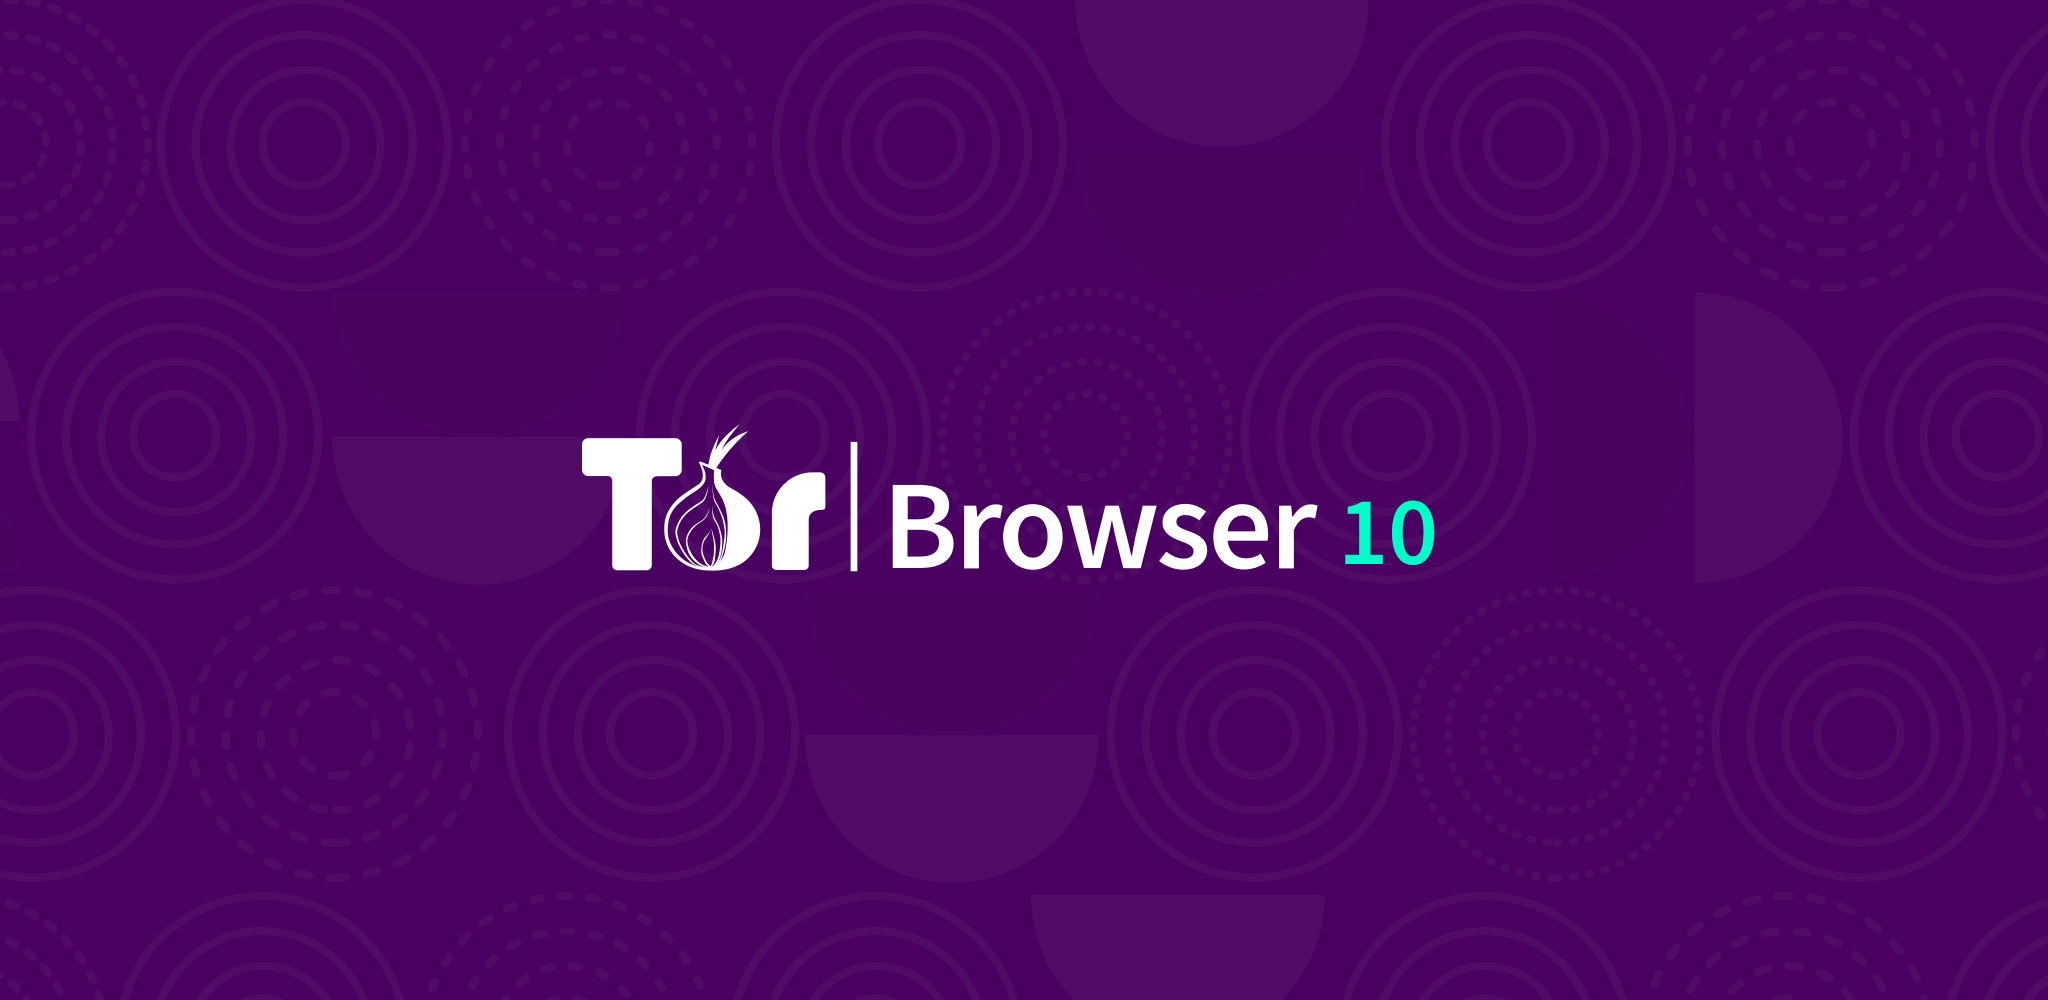 Tor browser 2016 mega скачать tor browser с торрент mega